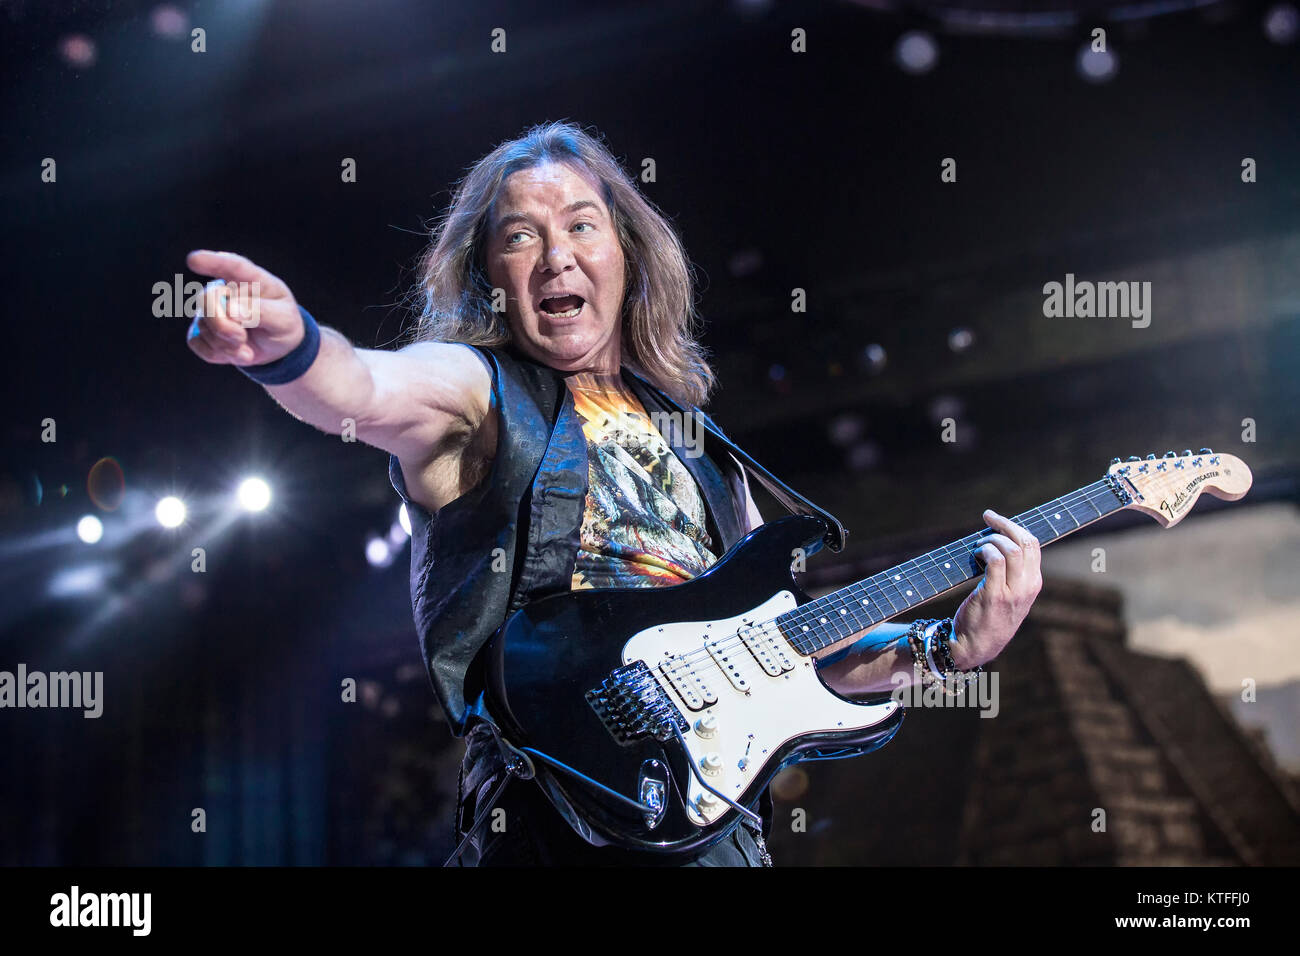 Iron Maiden, l'inglese heavy metal band, esegue un concerto dal vivo presso Telenor Arena di Oslo. Qui il chitarrista David Murray è visto dal vivo sul palco. Norvegia, 15/06 2016. Foto Stock